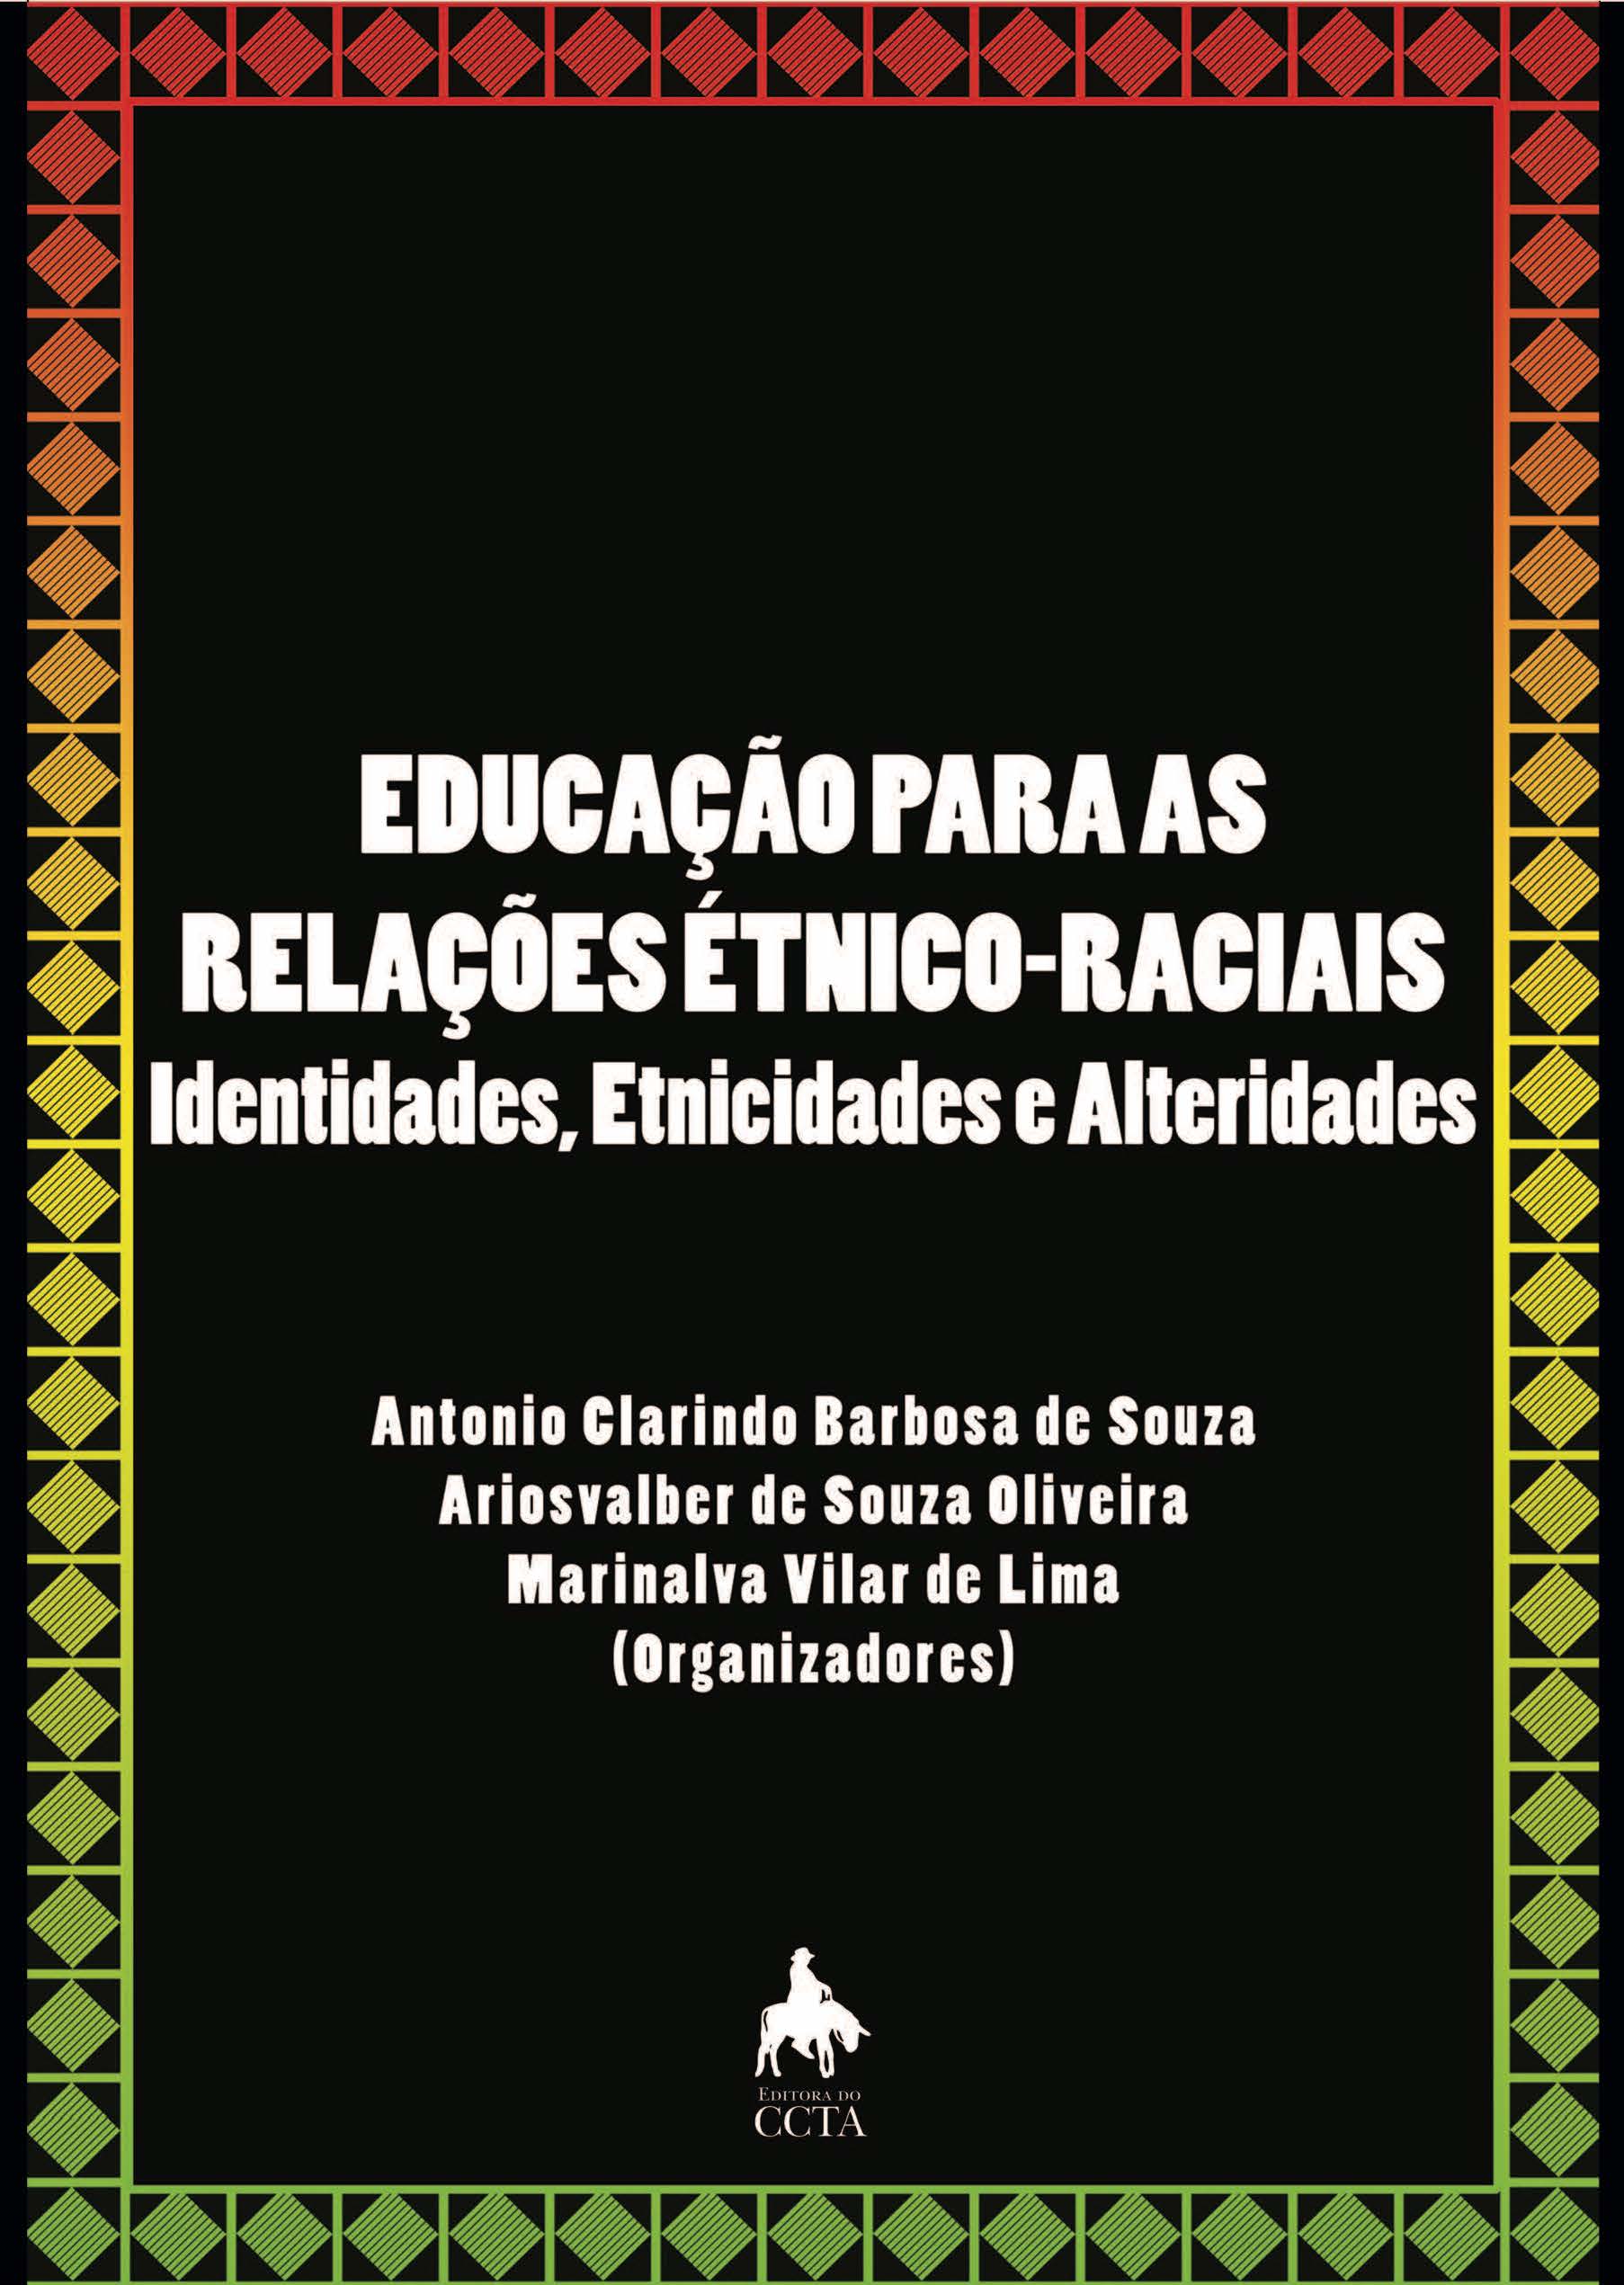 etnicoraciais_identidadesetnicidadesealteridades.jpg